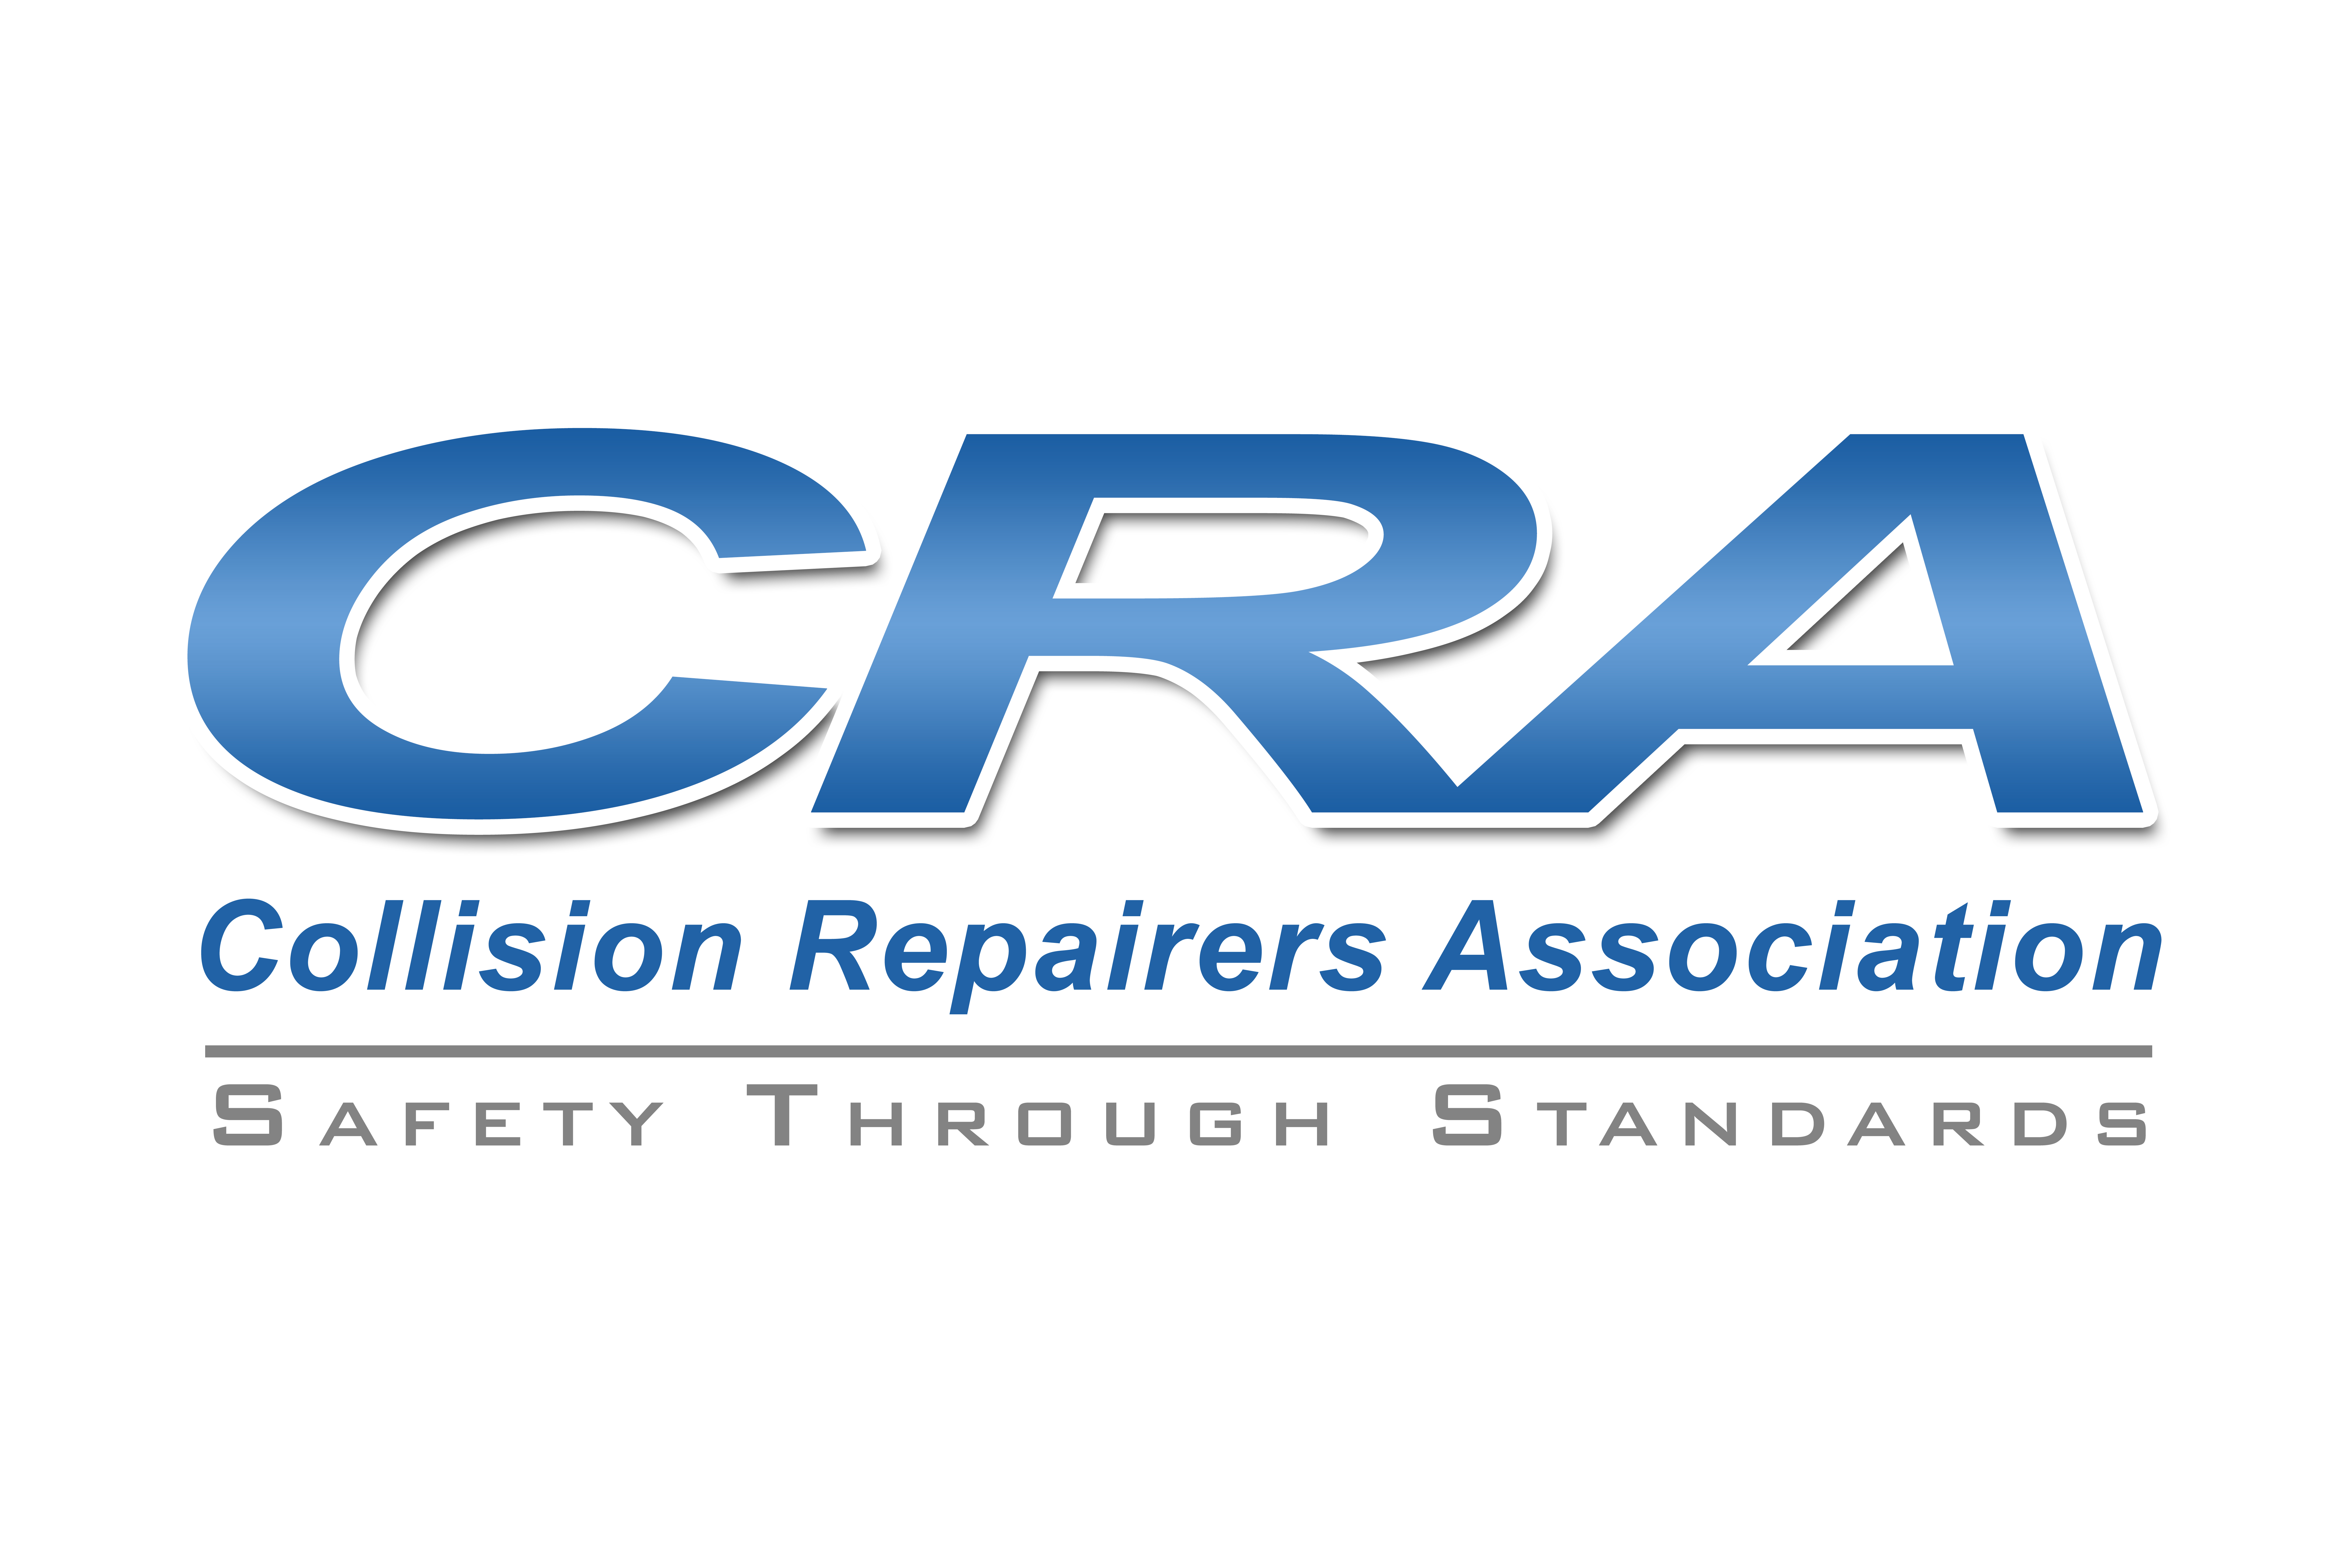 CRA Hi Res logo(300DPI) 4x6